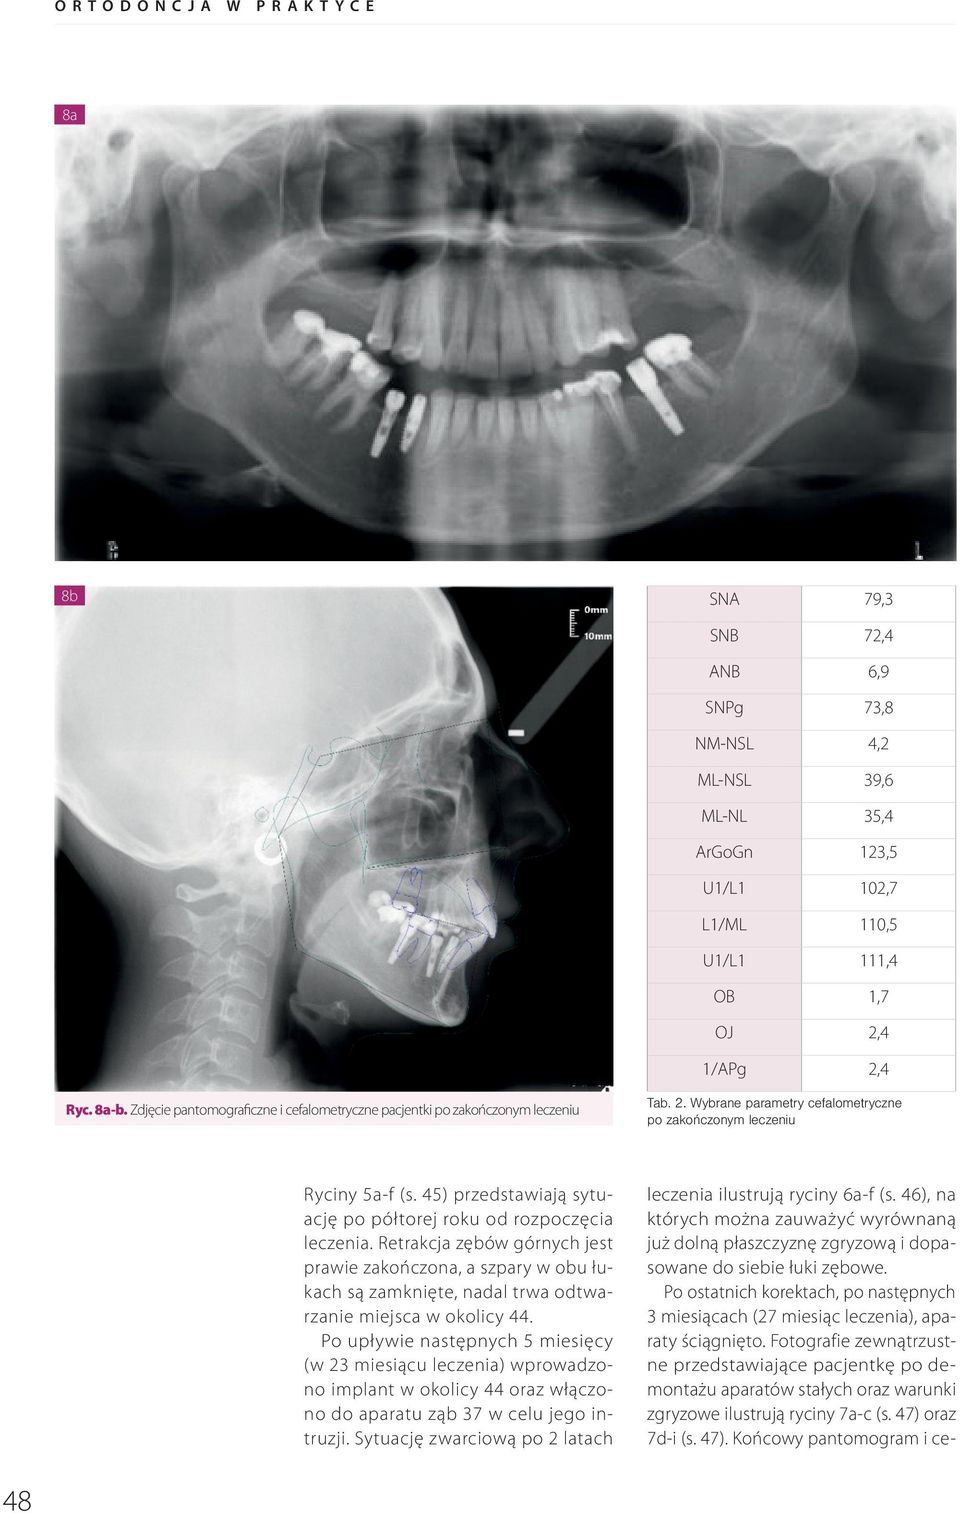 45) przedstawiają sytuację po półtorej roku od rozpoczęcia leczenia. Retrakcja zębów górnych jest prawie zakończona, a szpary w obu łukach są zamknięte, nadal trwa odtwarzanie miejsca w okolicy 44.